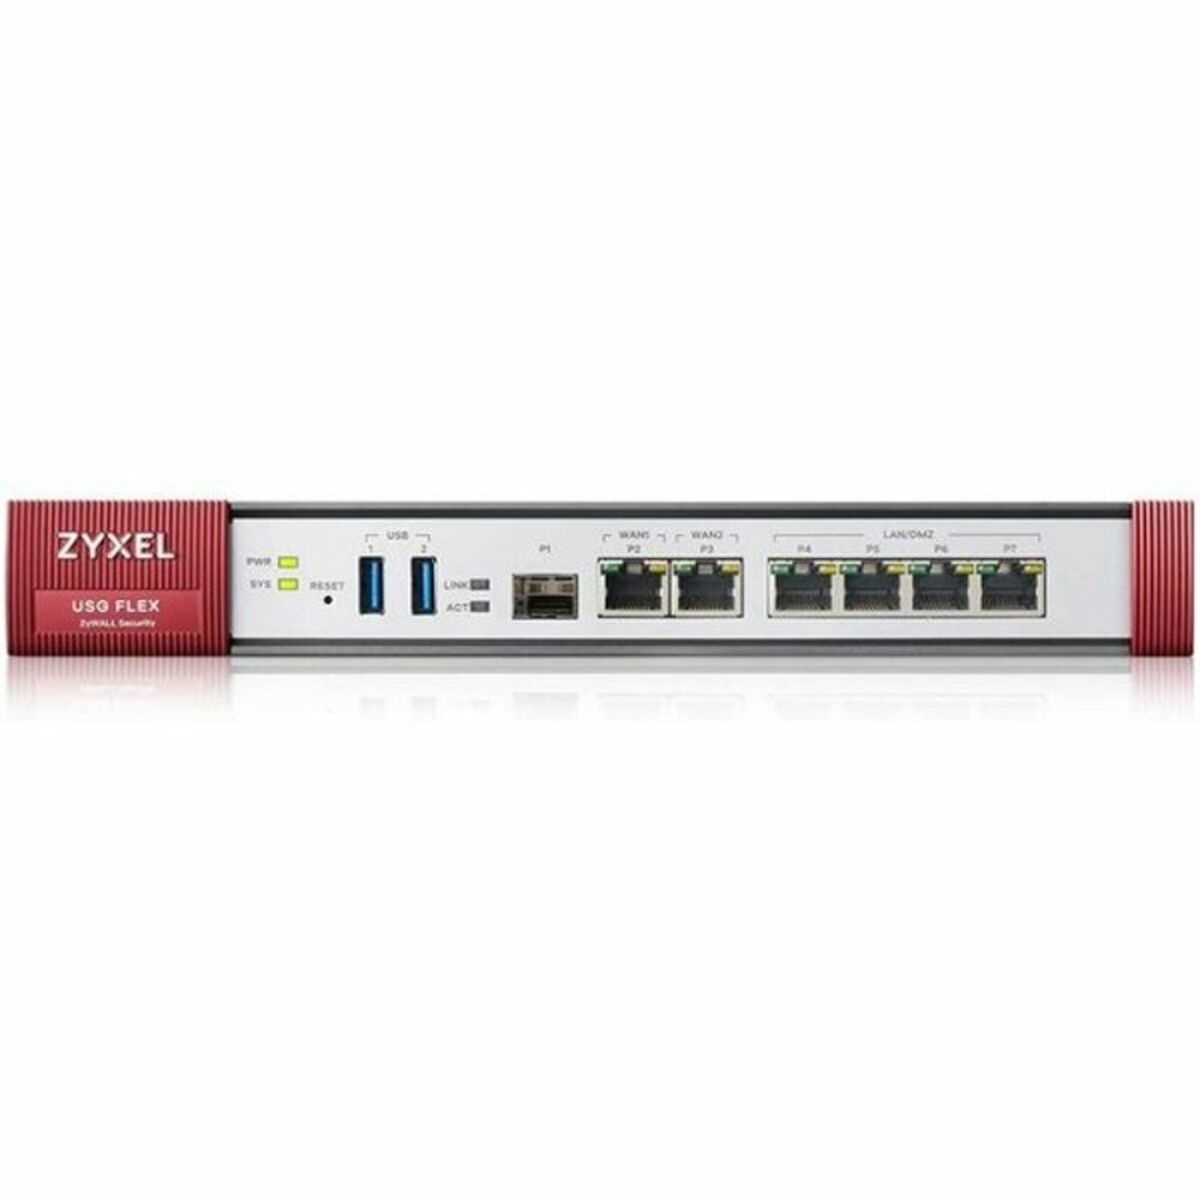 ZYXEL Firewall USGFLEX200-EU0101F